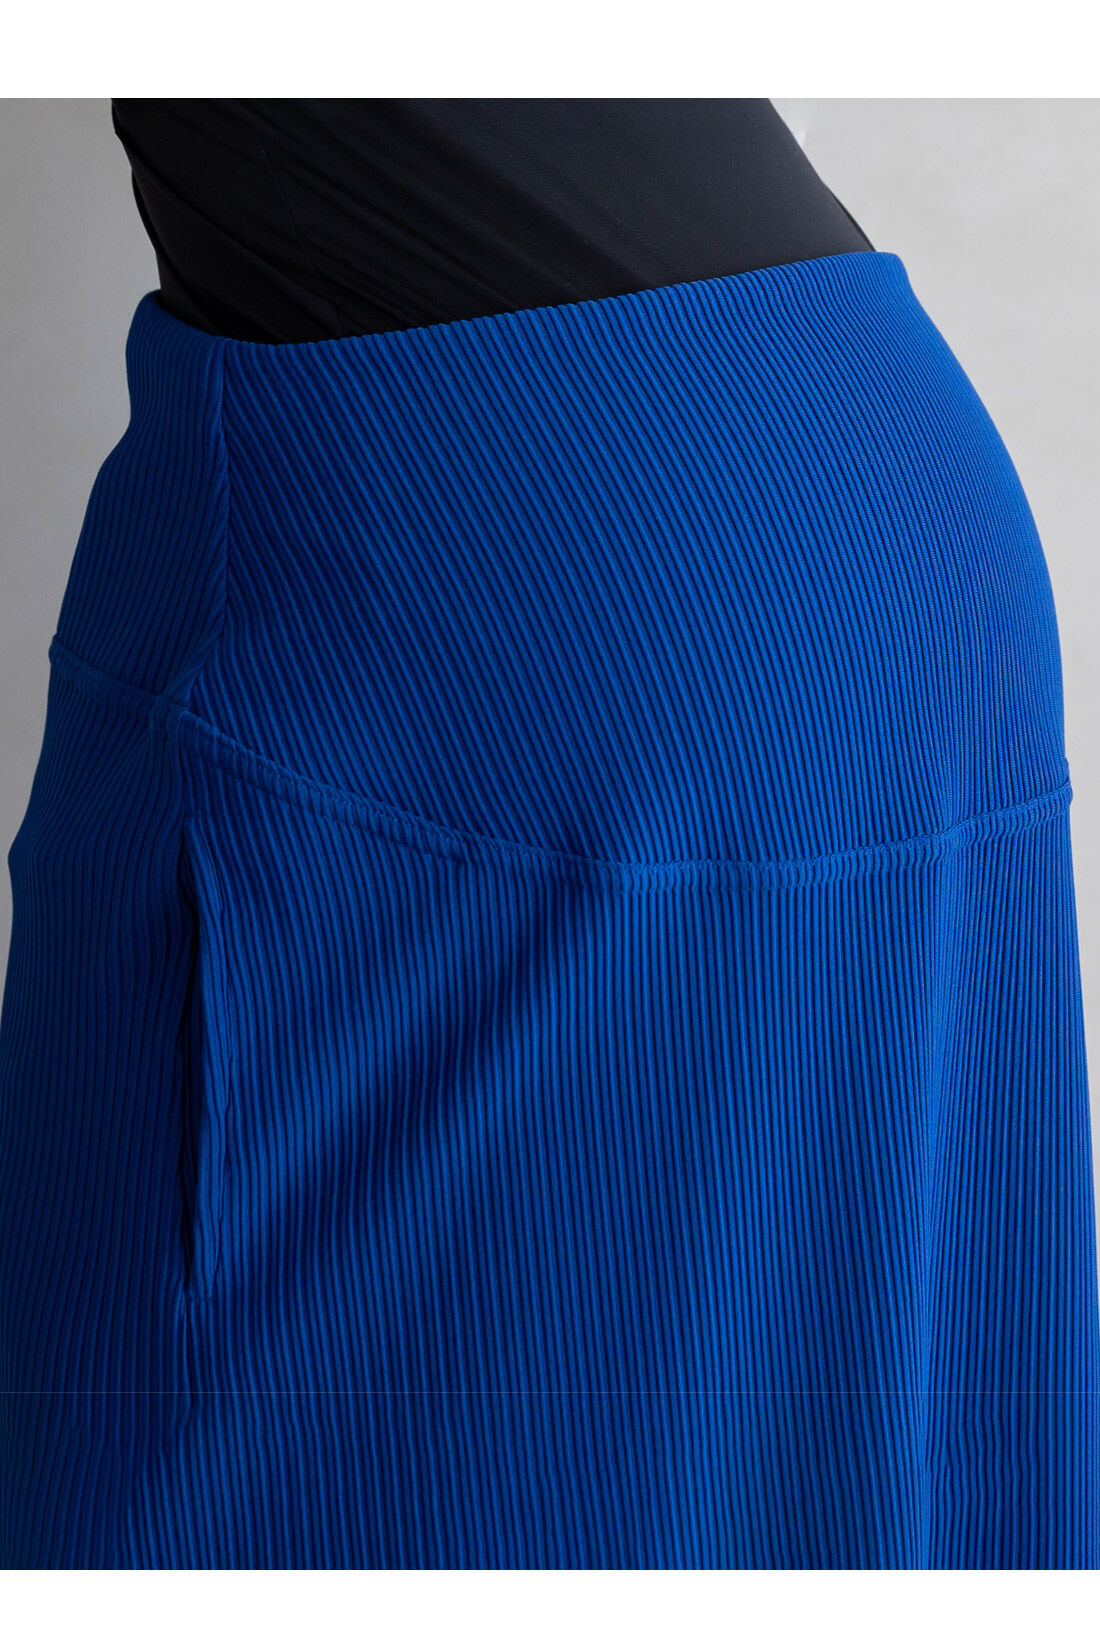 フェリシモMama|Moredde　リップルカットソー素材がらくちんきれいな　産前産後使えるIラインスカート〈ブルー〉|おなか周りの切り替え部分もスカートと同素材。見えてもきれいで高見えします。